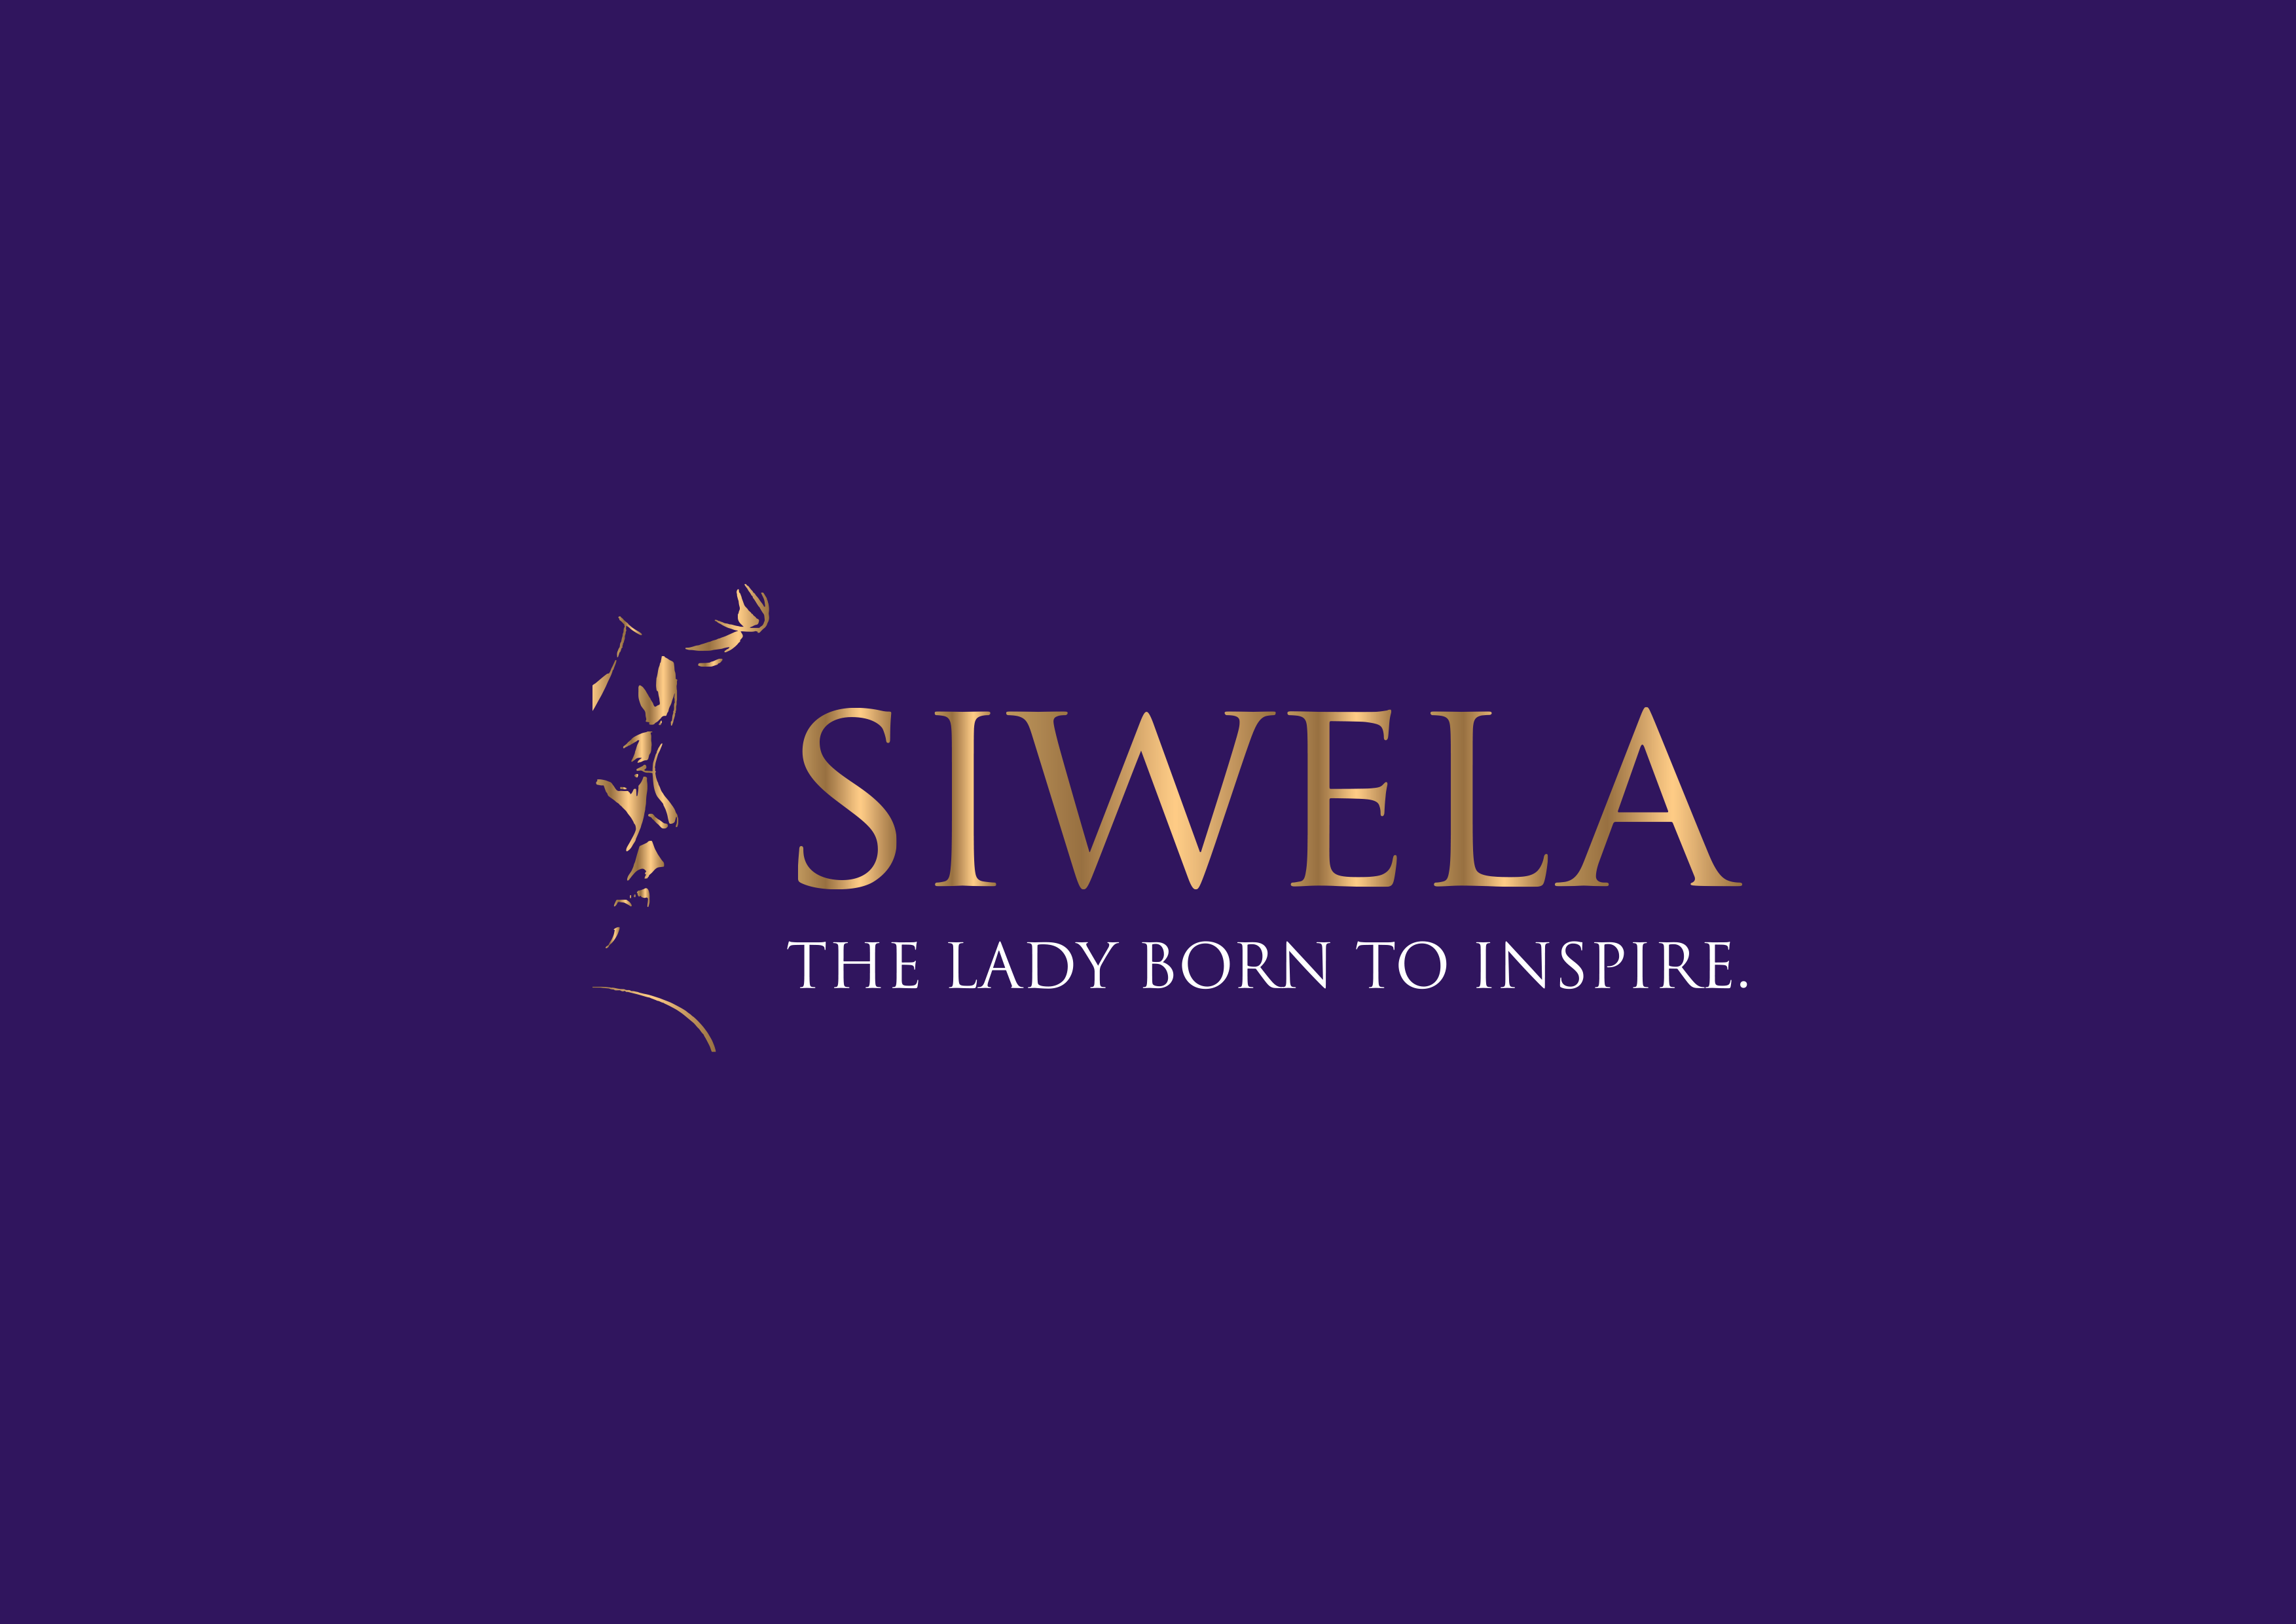 Siwela Wines